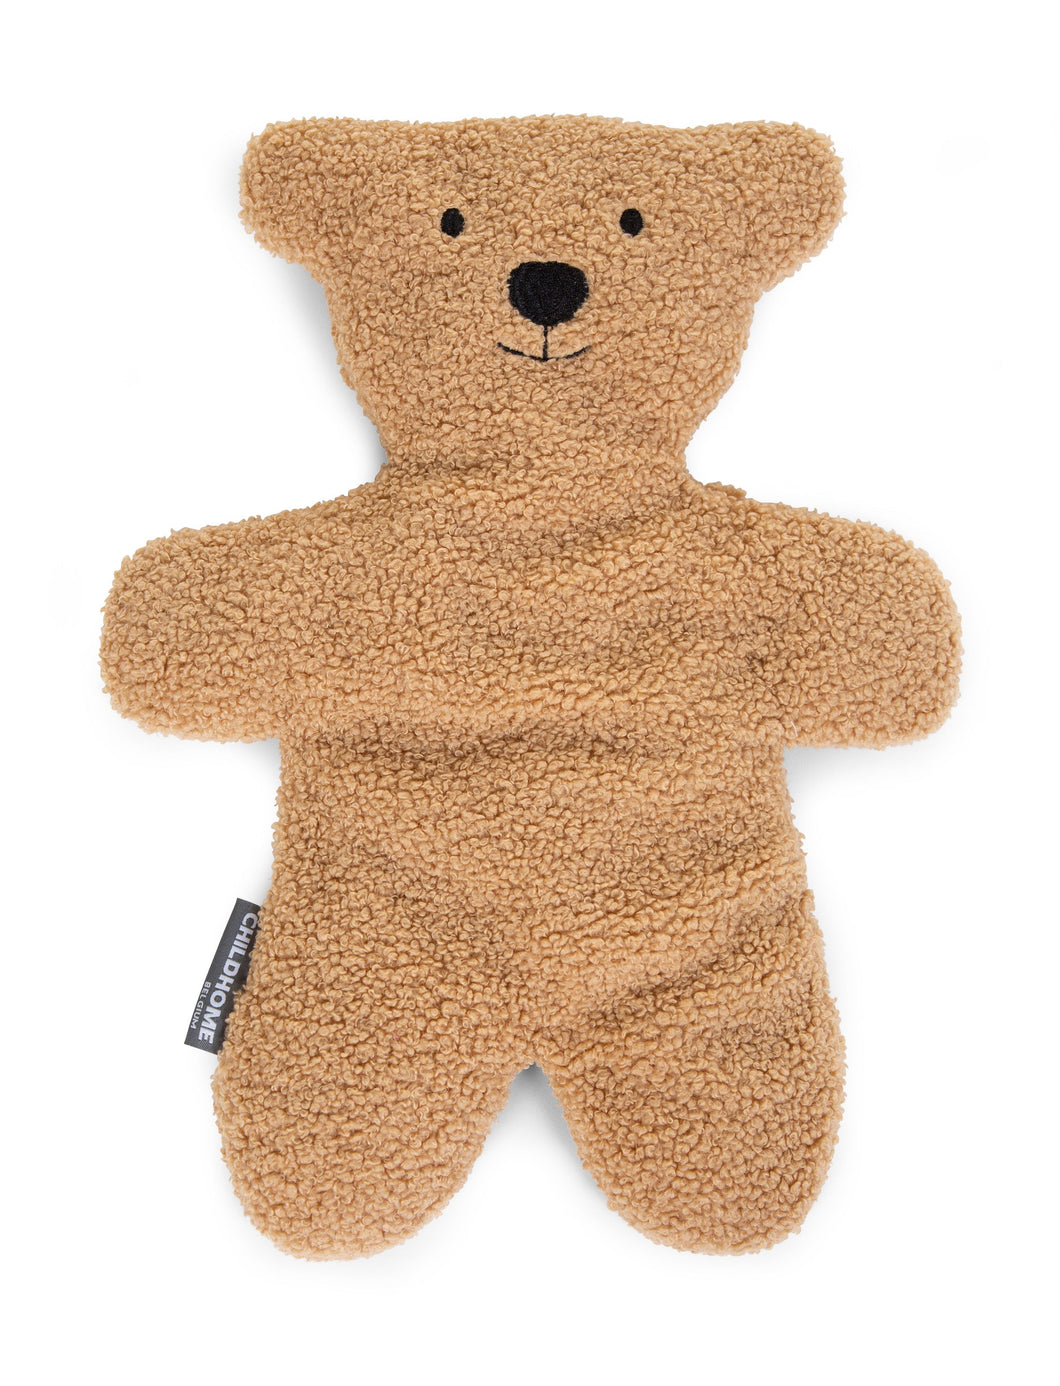 Teddy Bear Cuddly Toy - Teddy by Childhome